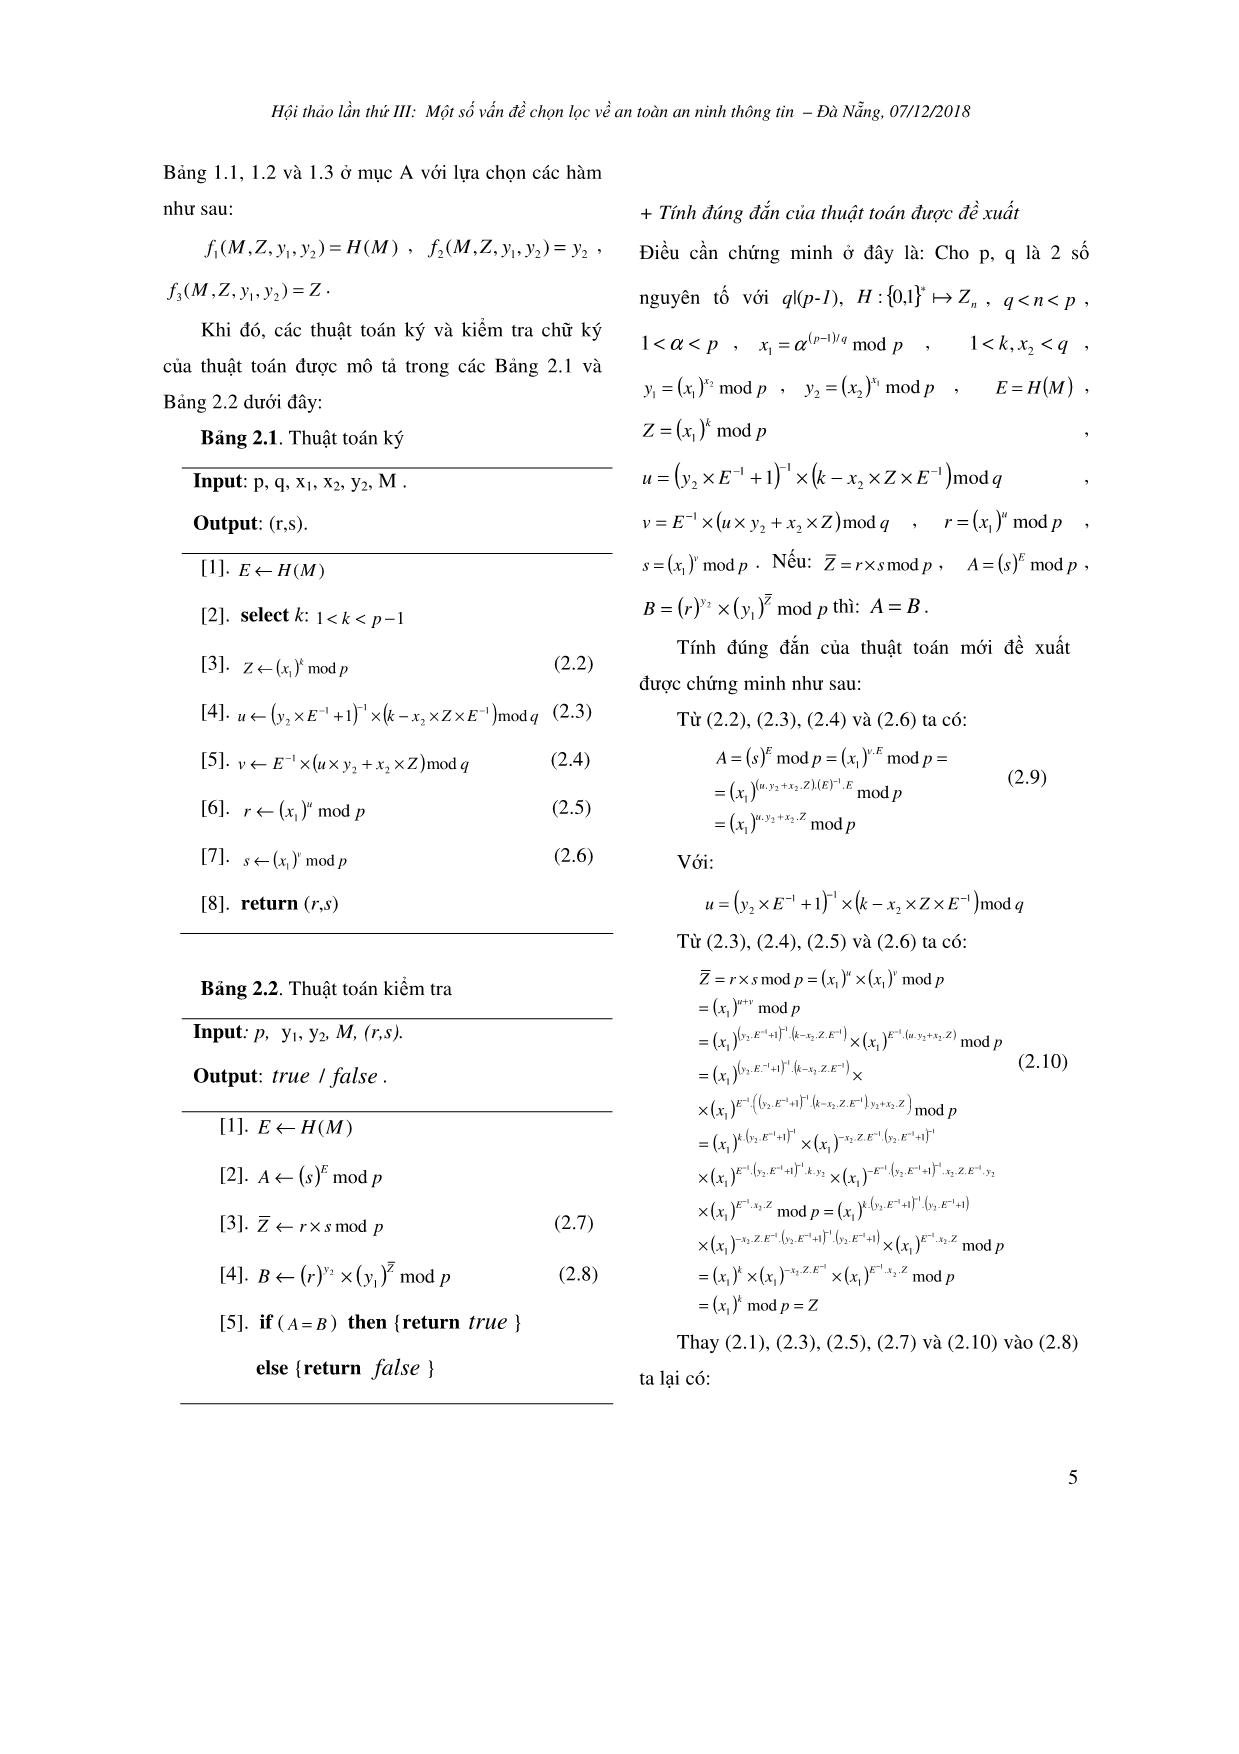 Phương pháp xây dựng thuật toán chữ ký số dựa trên một dạng bài toán khó mới trang 5